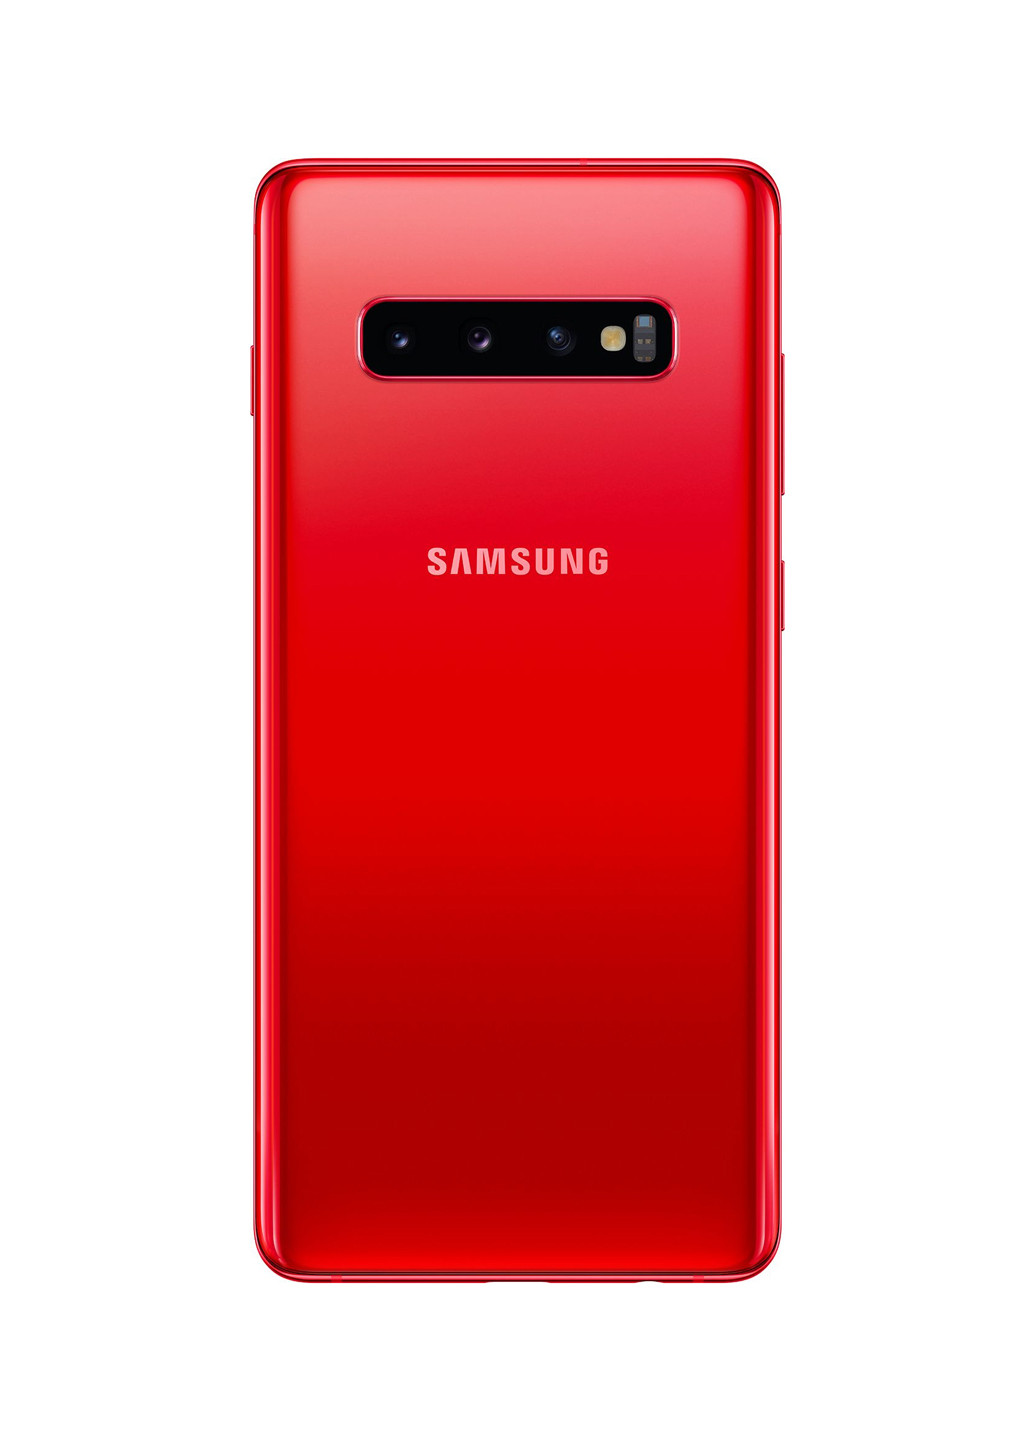 Смартфон Galaxy S10 + 8 / 128GB Red (SM-G975FZRDSEK) Samsung Galaxy S10+ 8/128GB Red (SM-G975FZRDSEK) червоний